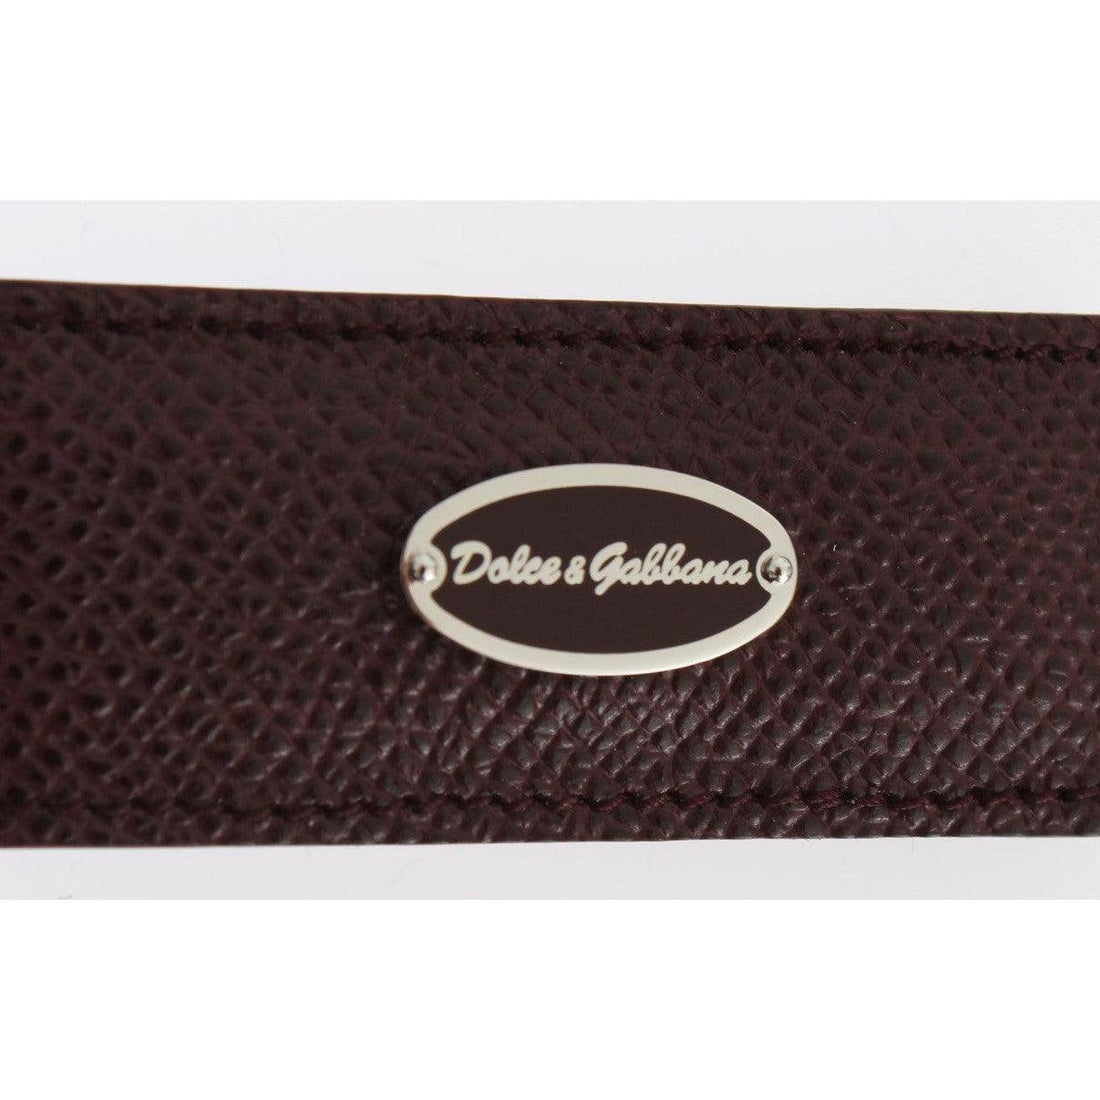 Dolce & Gabbana Bordeaux Leather Magnet Money Clip